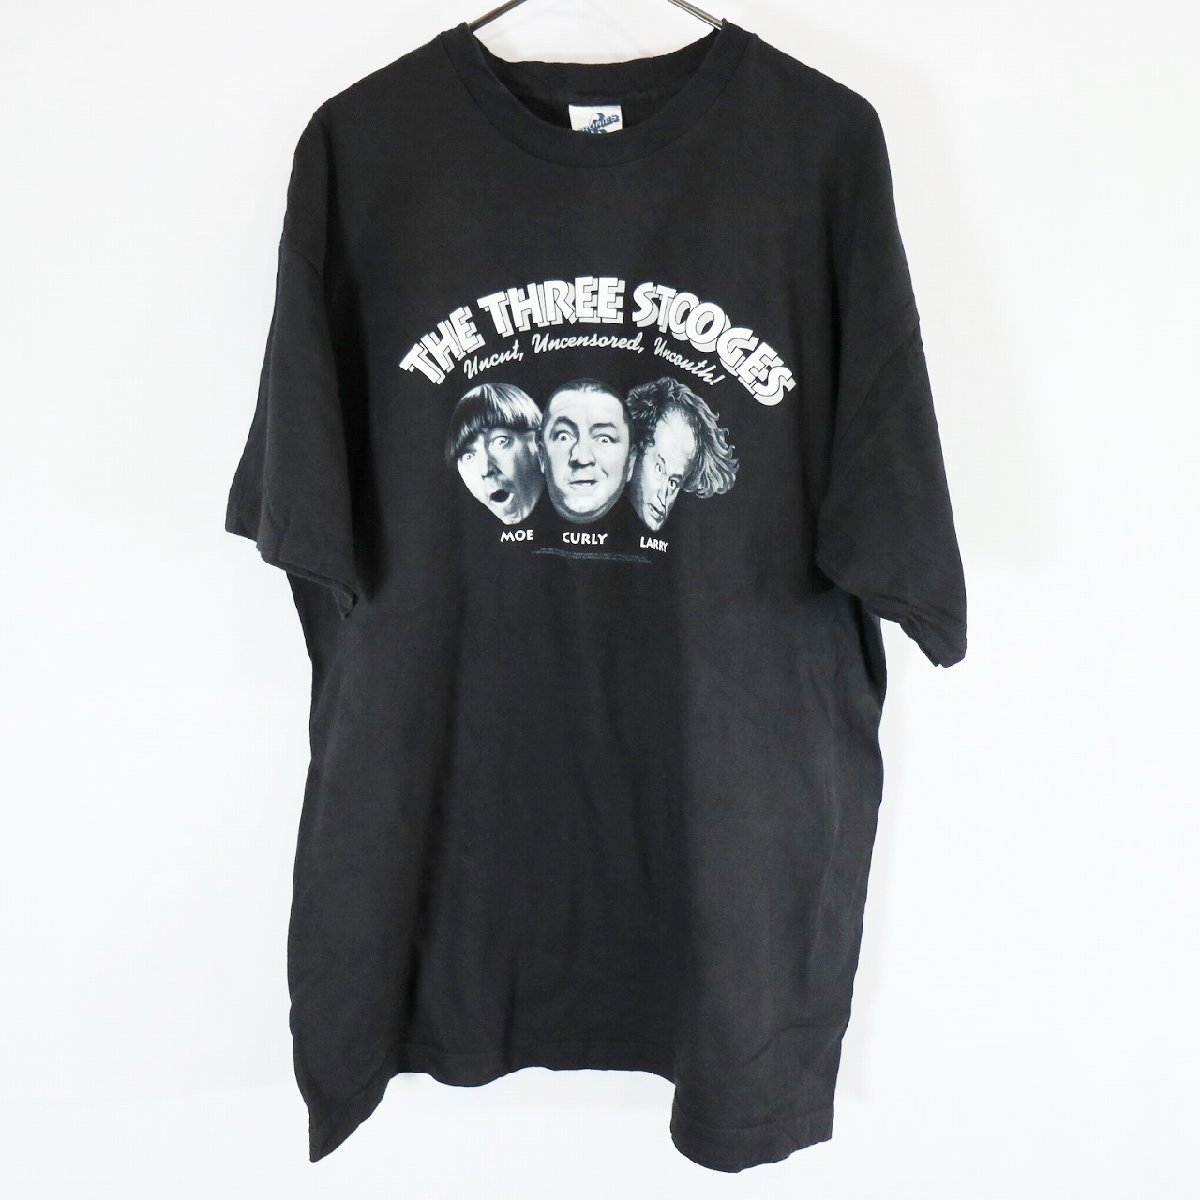 90s USA製 The Three Stooges プリント 半袖 Tシャツ 三ばか大将 映画 人物 ブラック ( メンズ XL ) 中古 古着 N0497